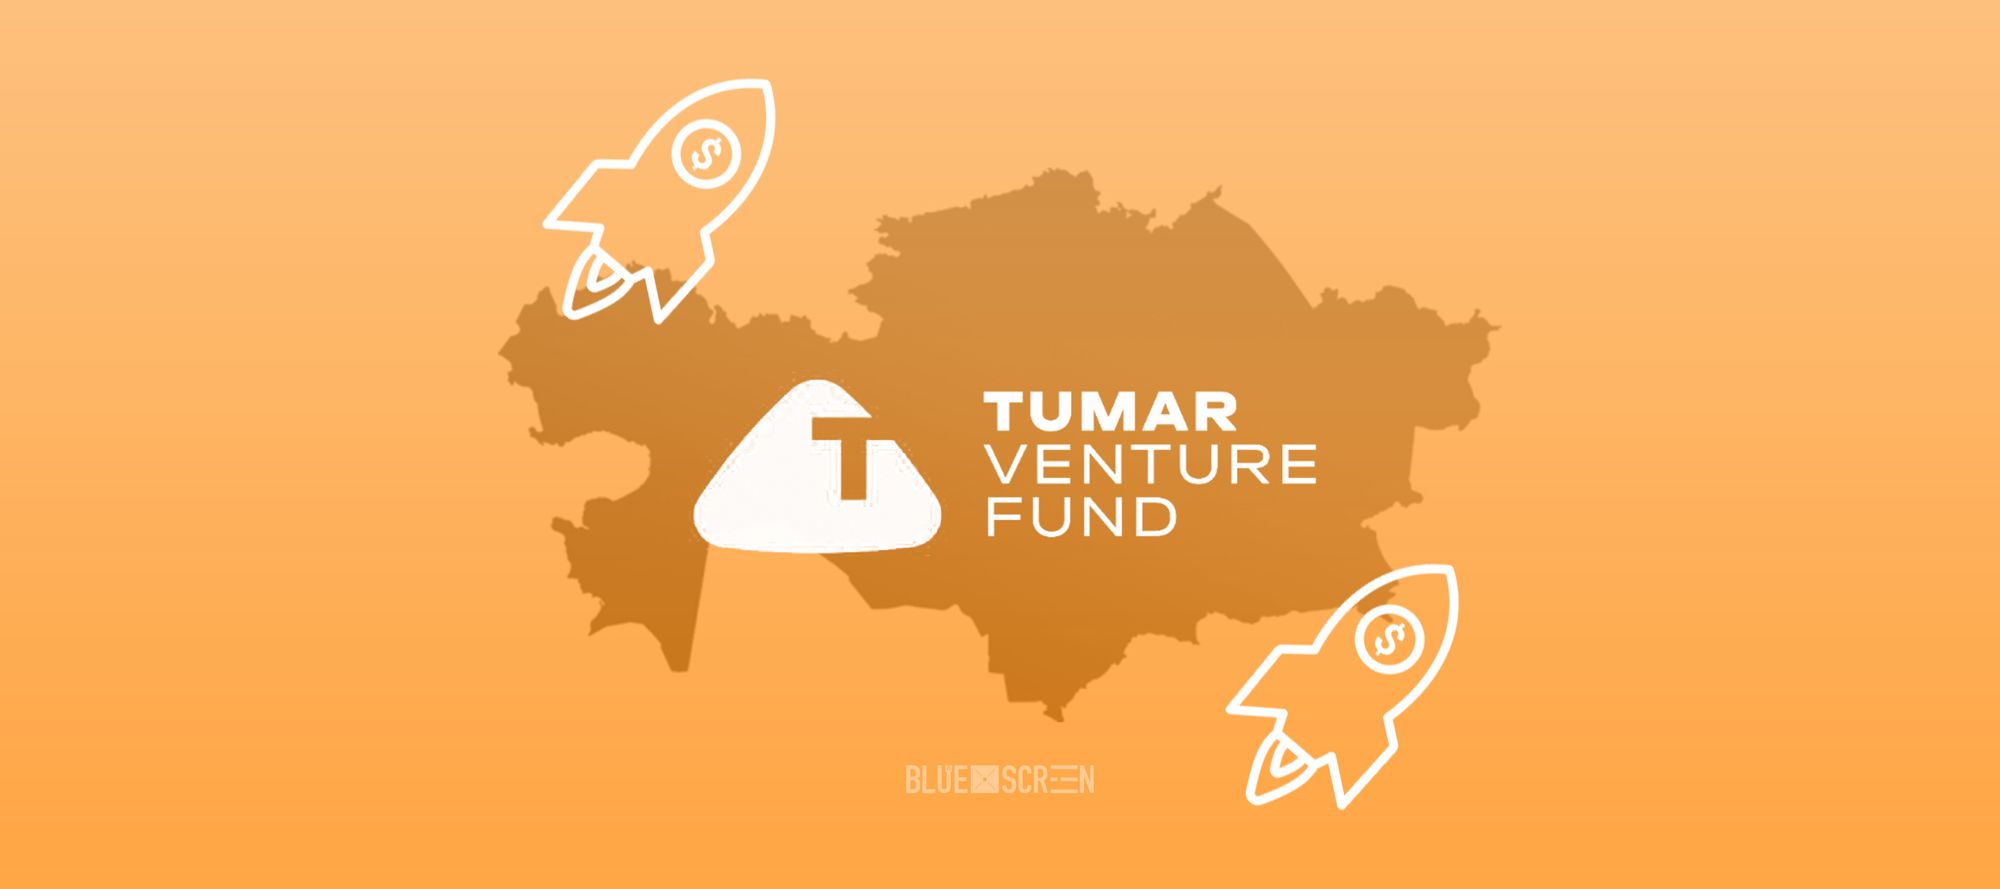 Венчурный фонд Tumar Venture Fund объявляет о приеме заявок от стартапов